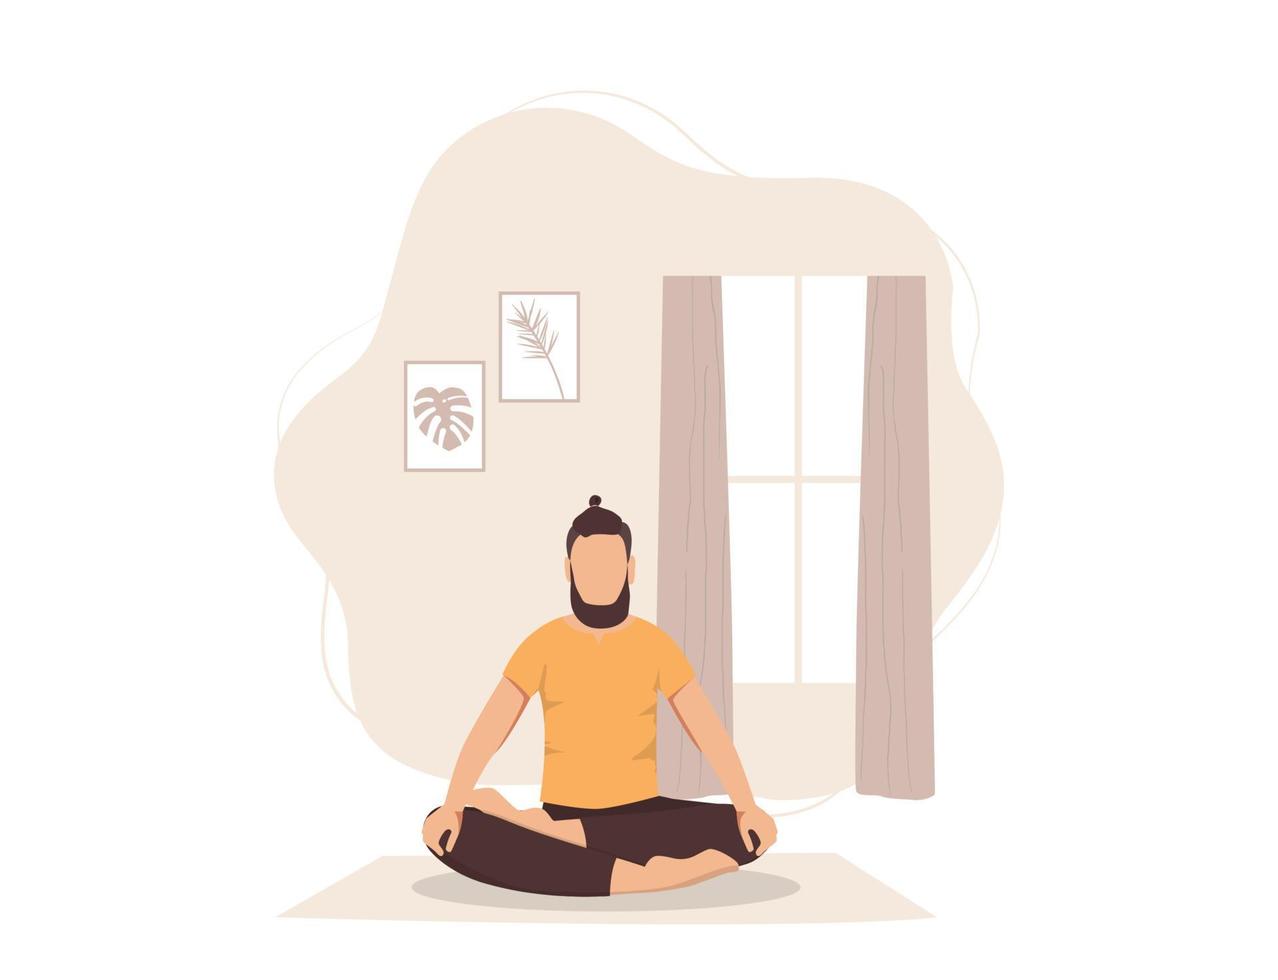 mannen sitter i lotusläget hemma. begreppet andning och lugn. vektor illustration